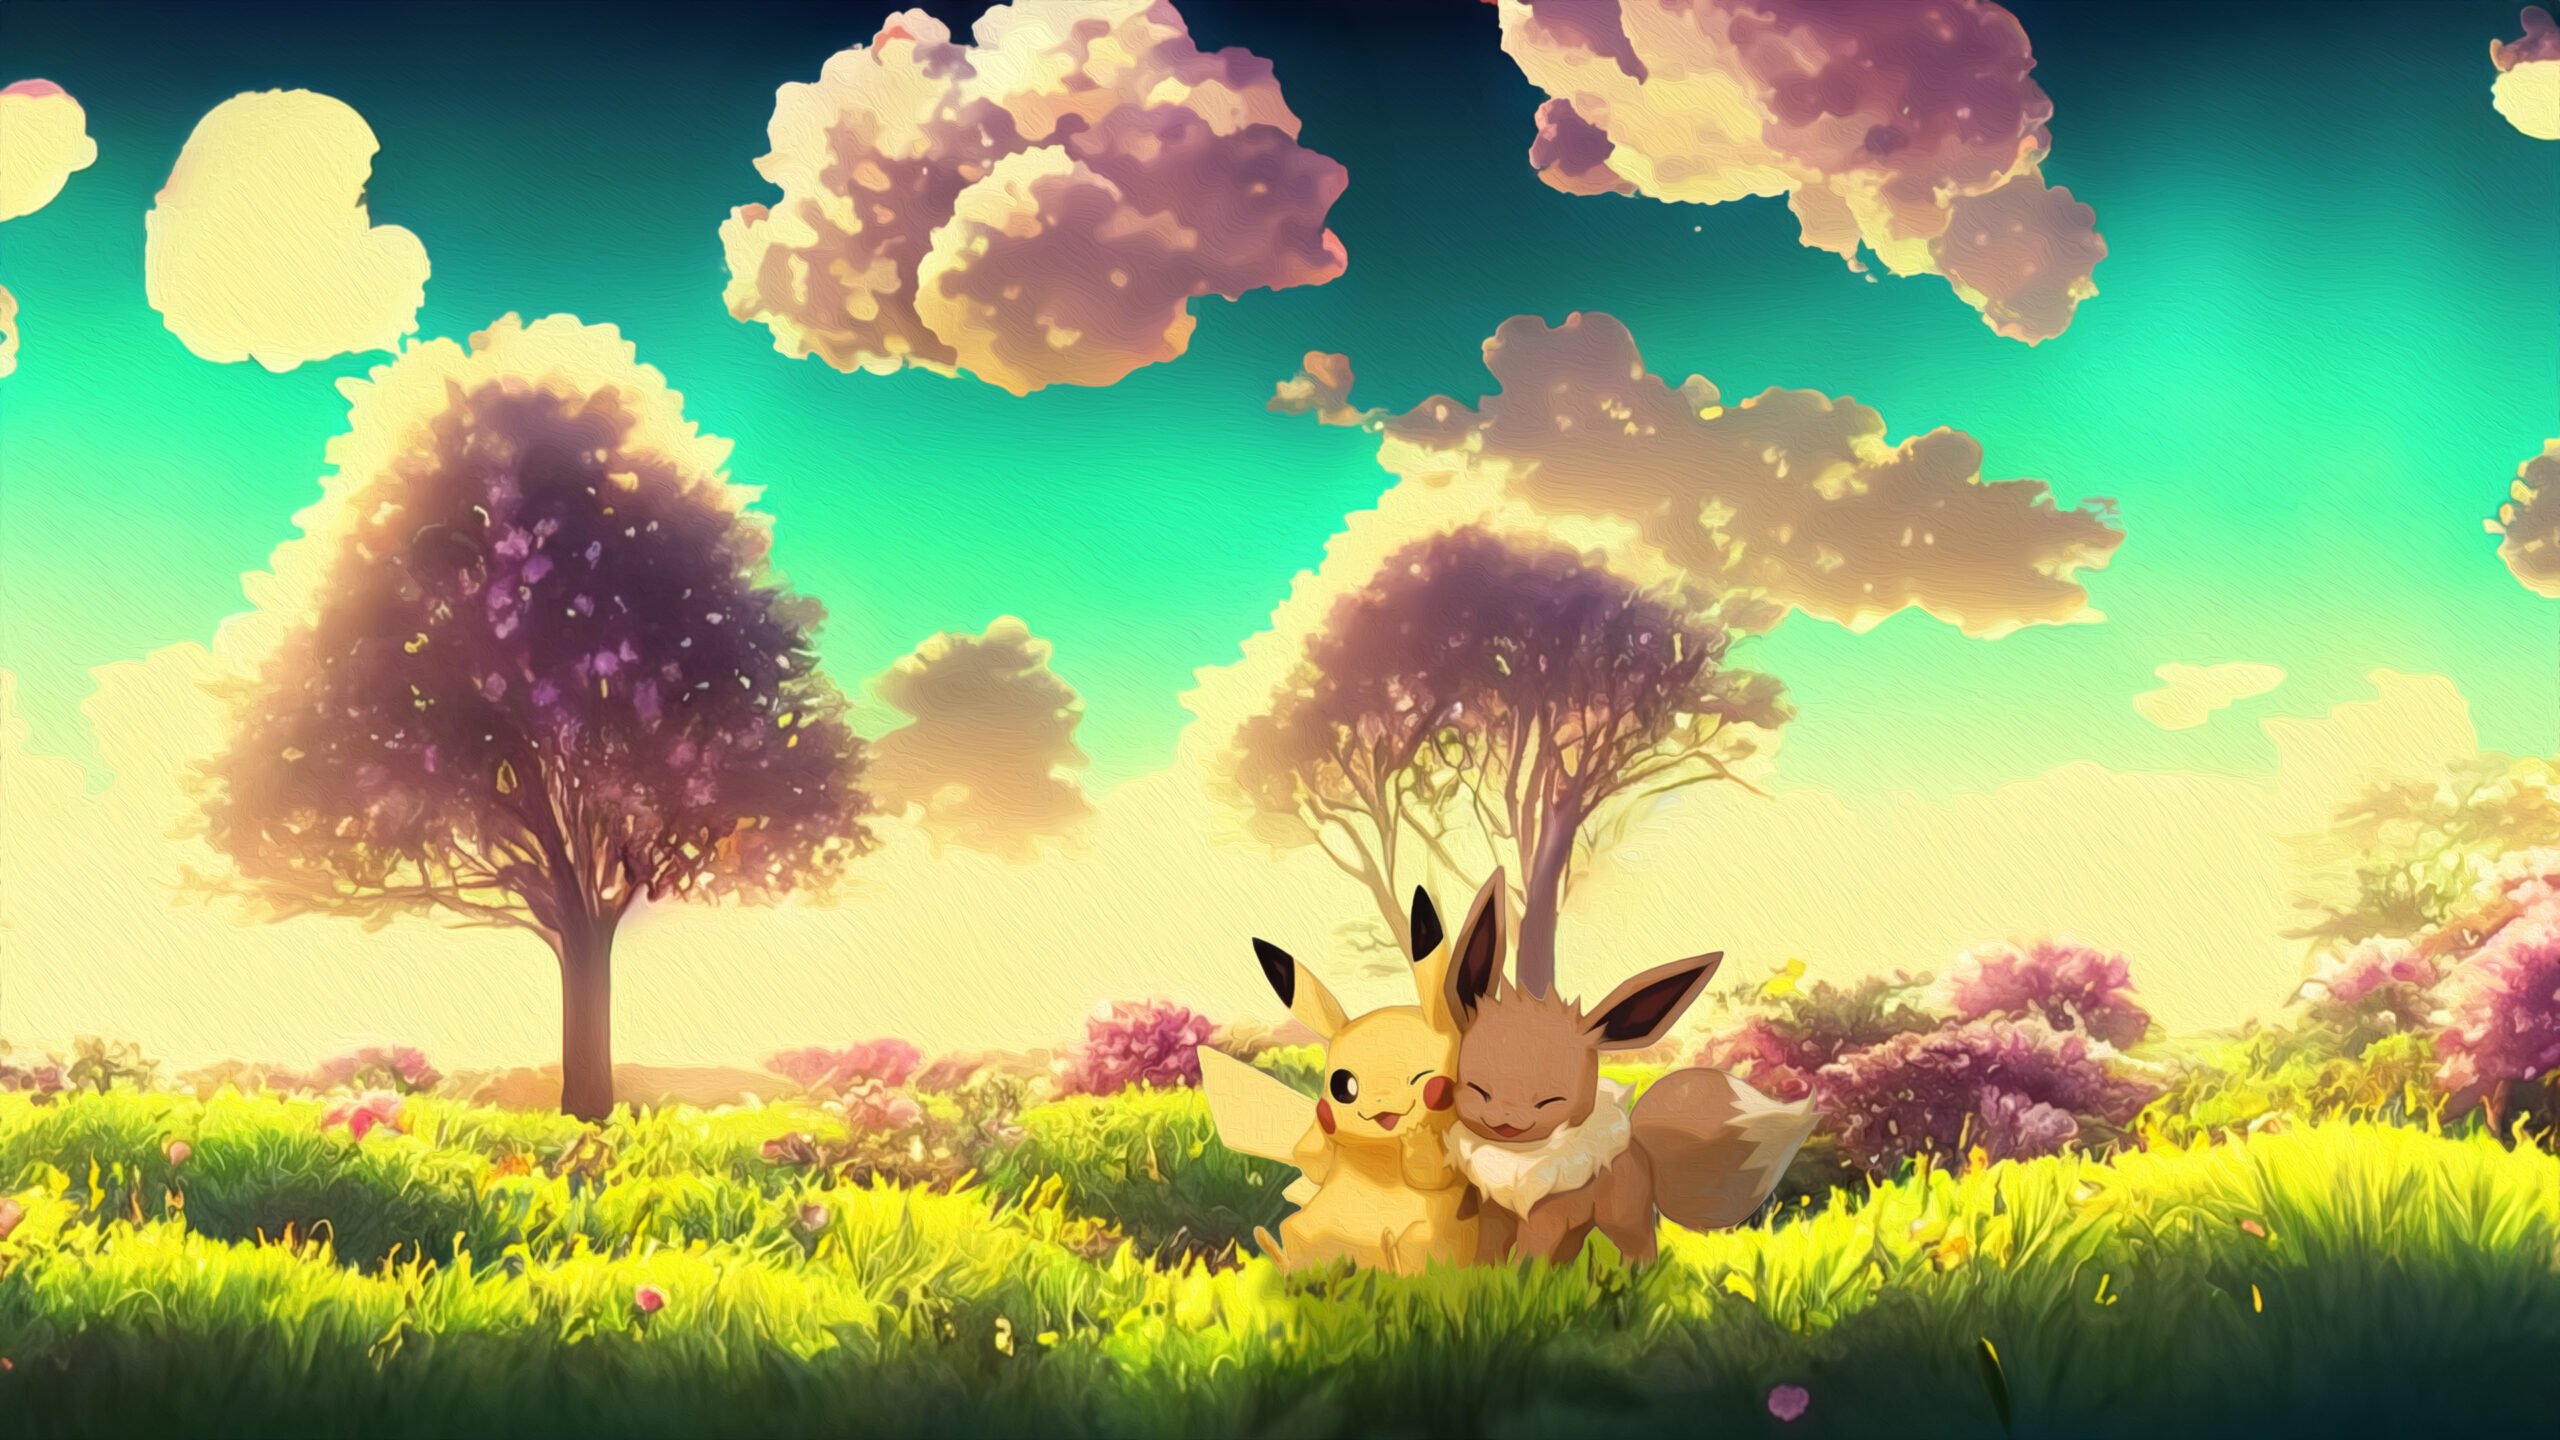 Pikachu et Évoli en plein câlin – fond d’écran Pokémon en 4K pour mobile et ordinateur